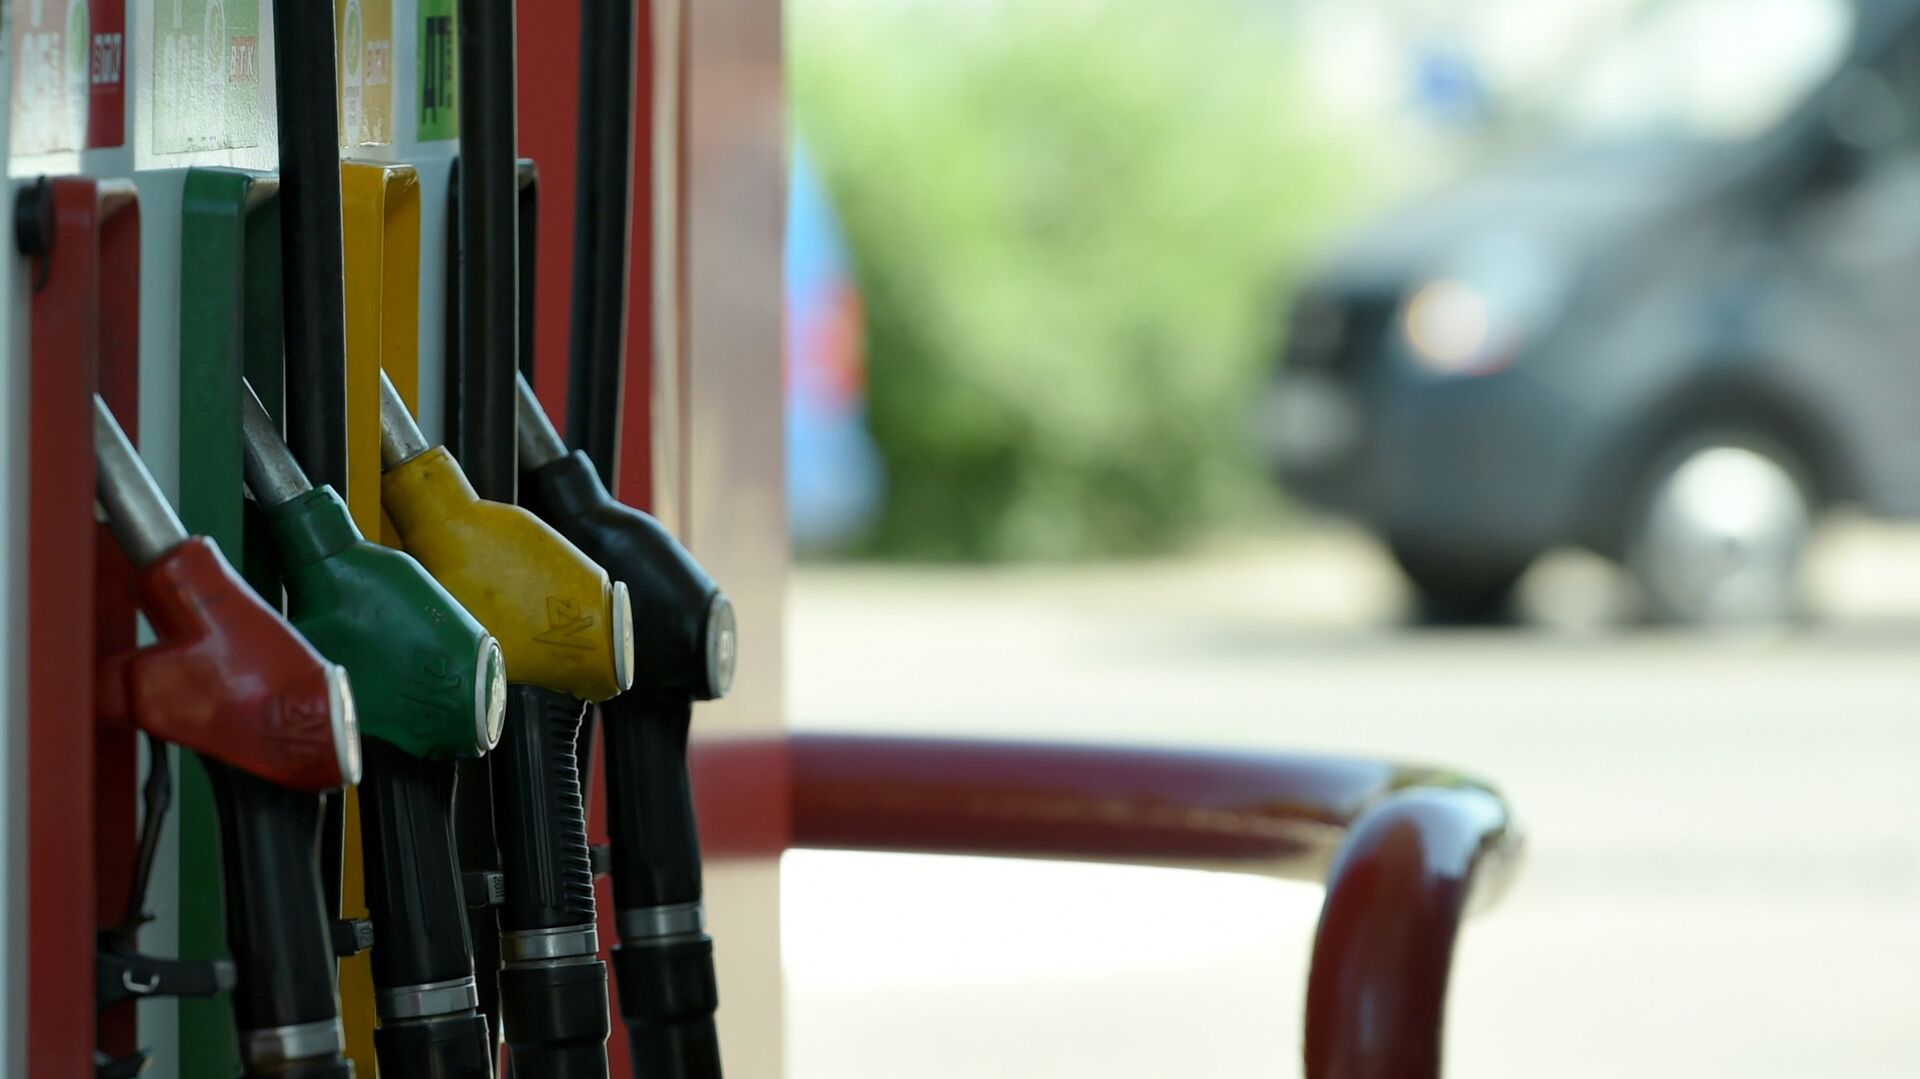 ФАС выдала предупреждение дочерней компании "Лукойла" из-за цен на бензин